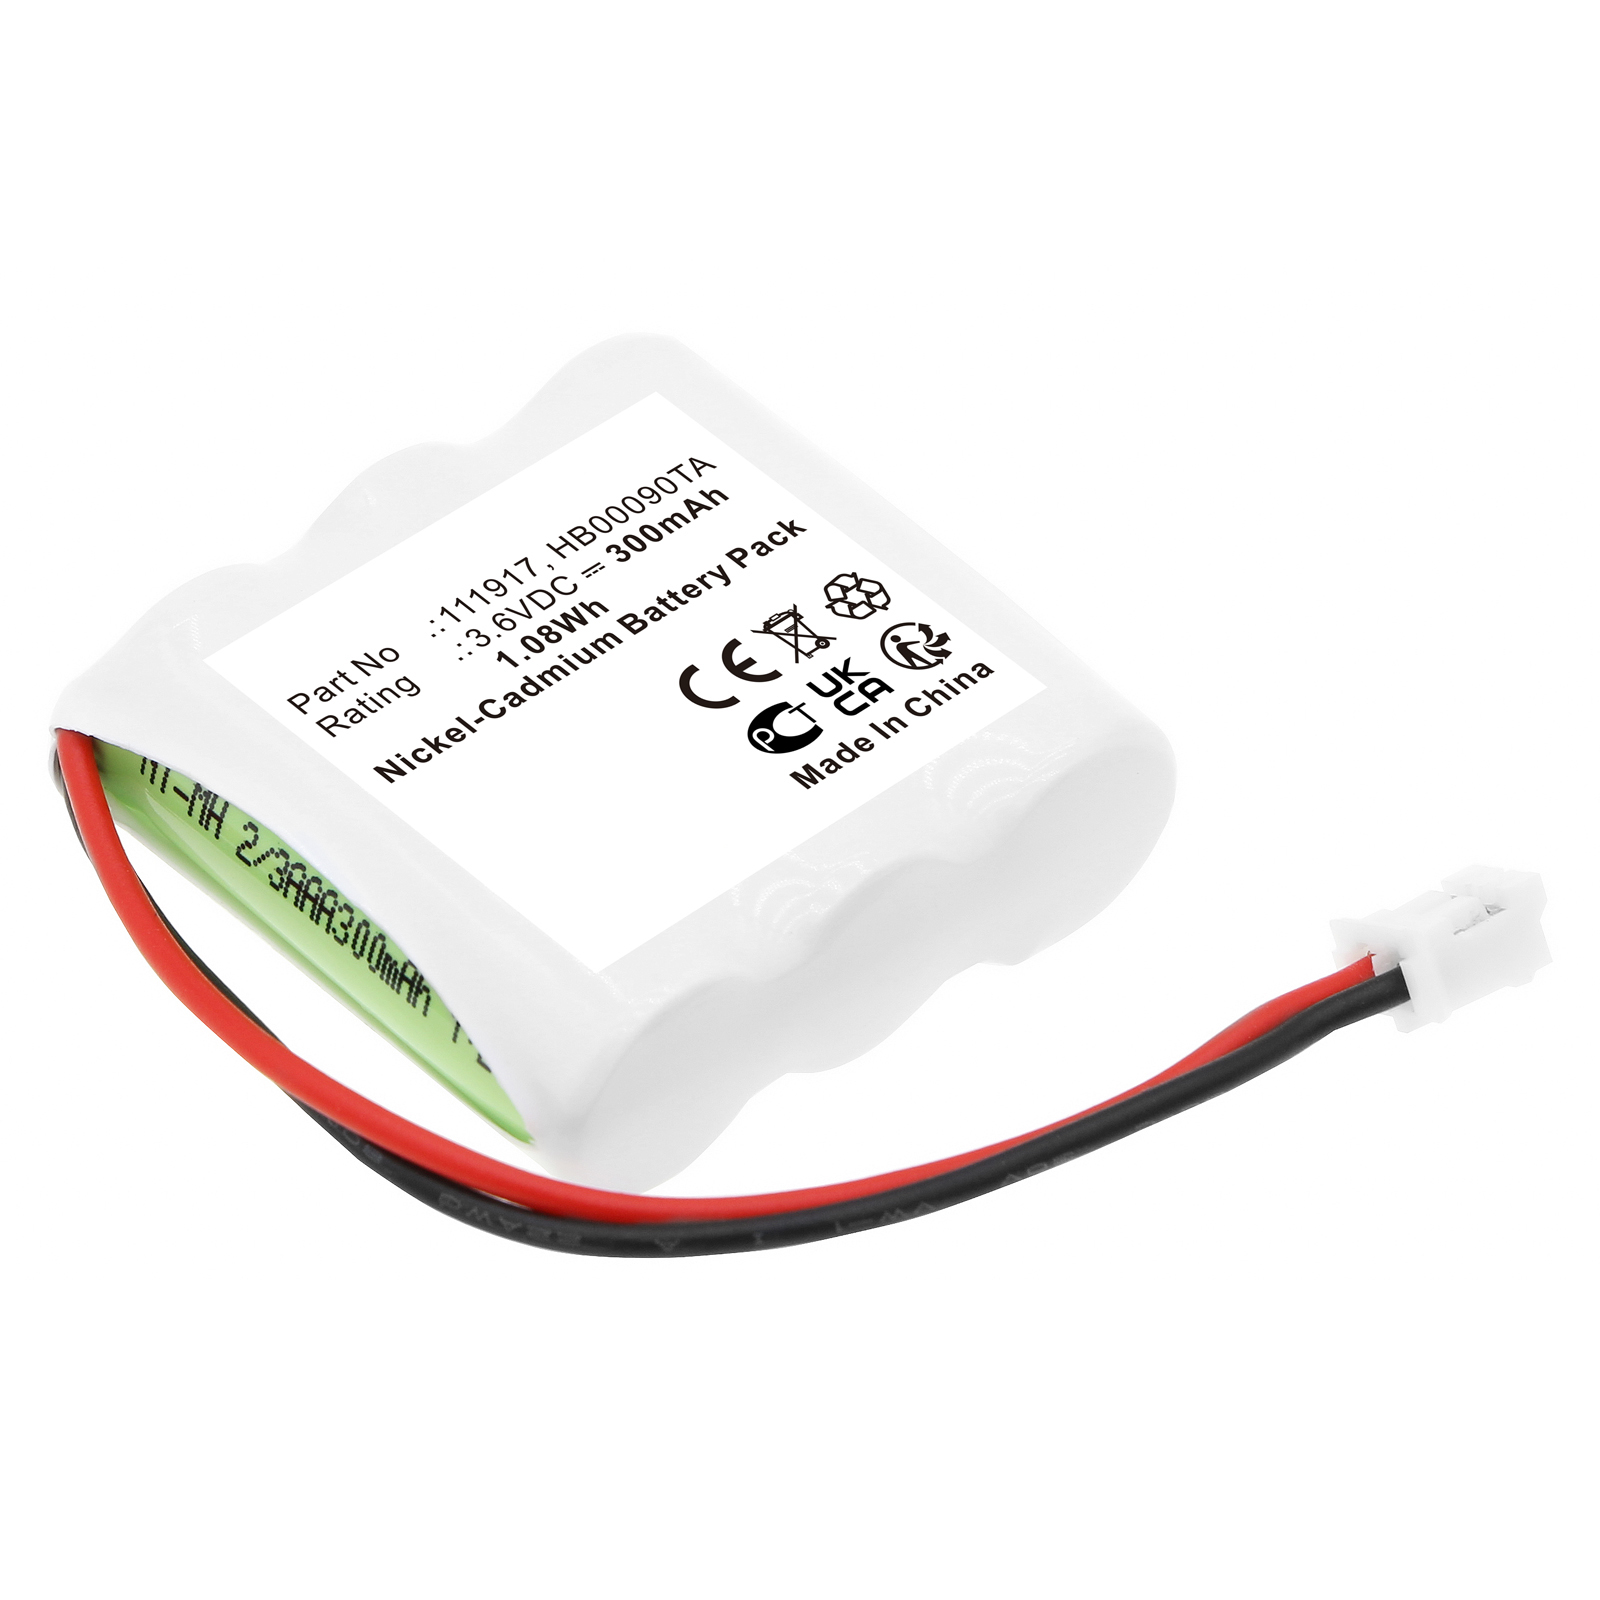 Synergy Digital Emergency Lighting Battery, Compatible with URA 111917 Emergency Lighting Battery (Ni-MH, 3.6V, 300mAh)